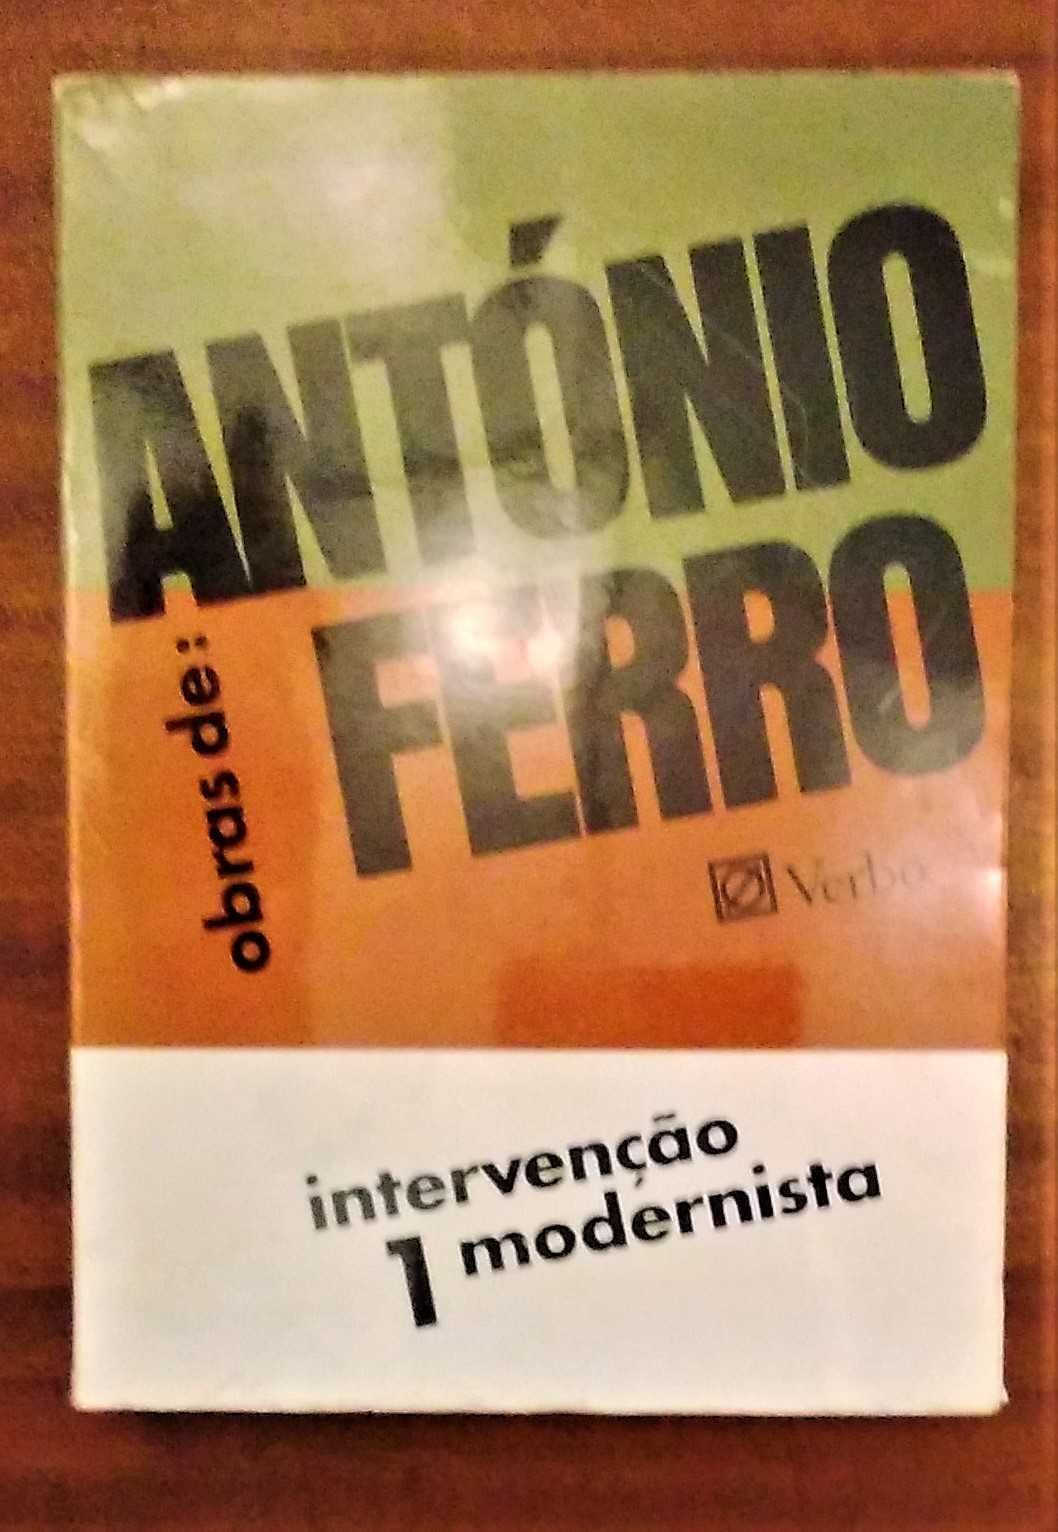 Intervenção Modernista; Teoria do Gosto, António Ferro